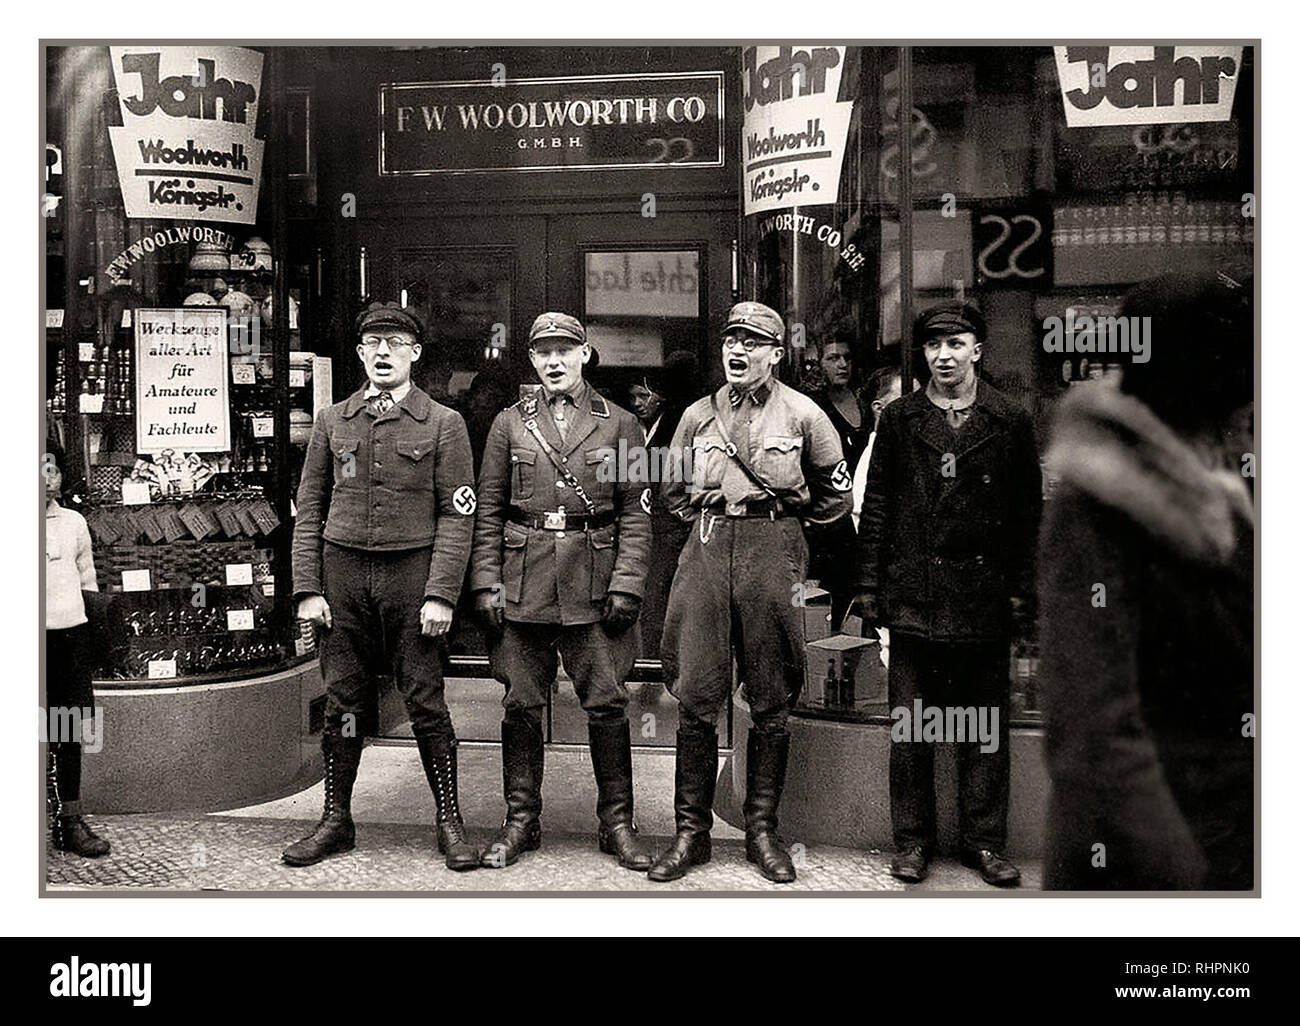 Shop Store degli anni '30 boicottaggio i membri del partito anti-ebrei nazisti e NSDAP Sturmabteilung indulgono nel canto razzista anti-ebraico, all'ingresso del negozio tedesco Woolworth, per promuovere un boicottaggio dei Woolworths Germania 1933, (presumibilmente) di fondazione ebraica. Foto Stock